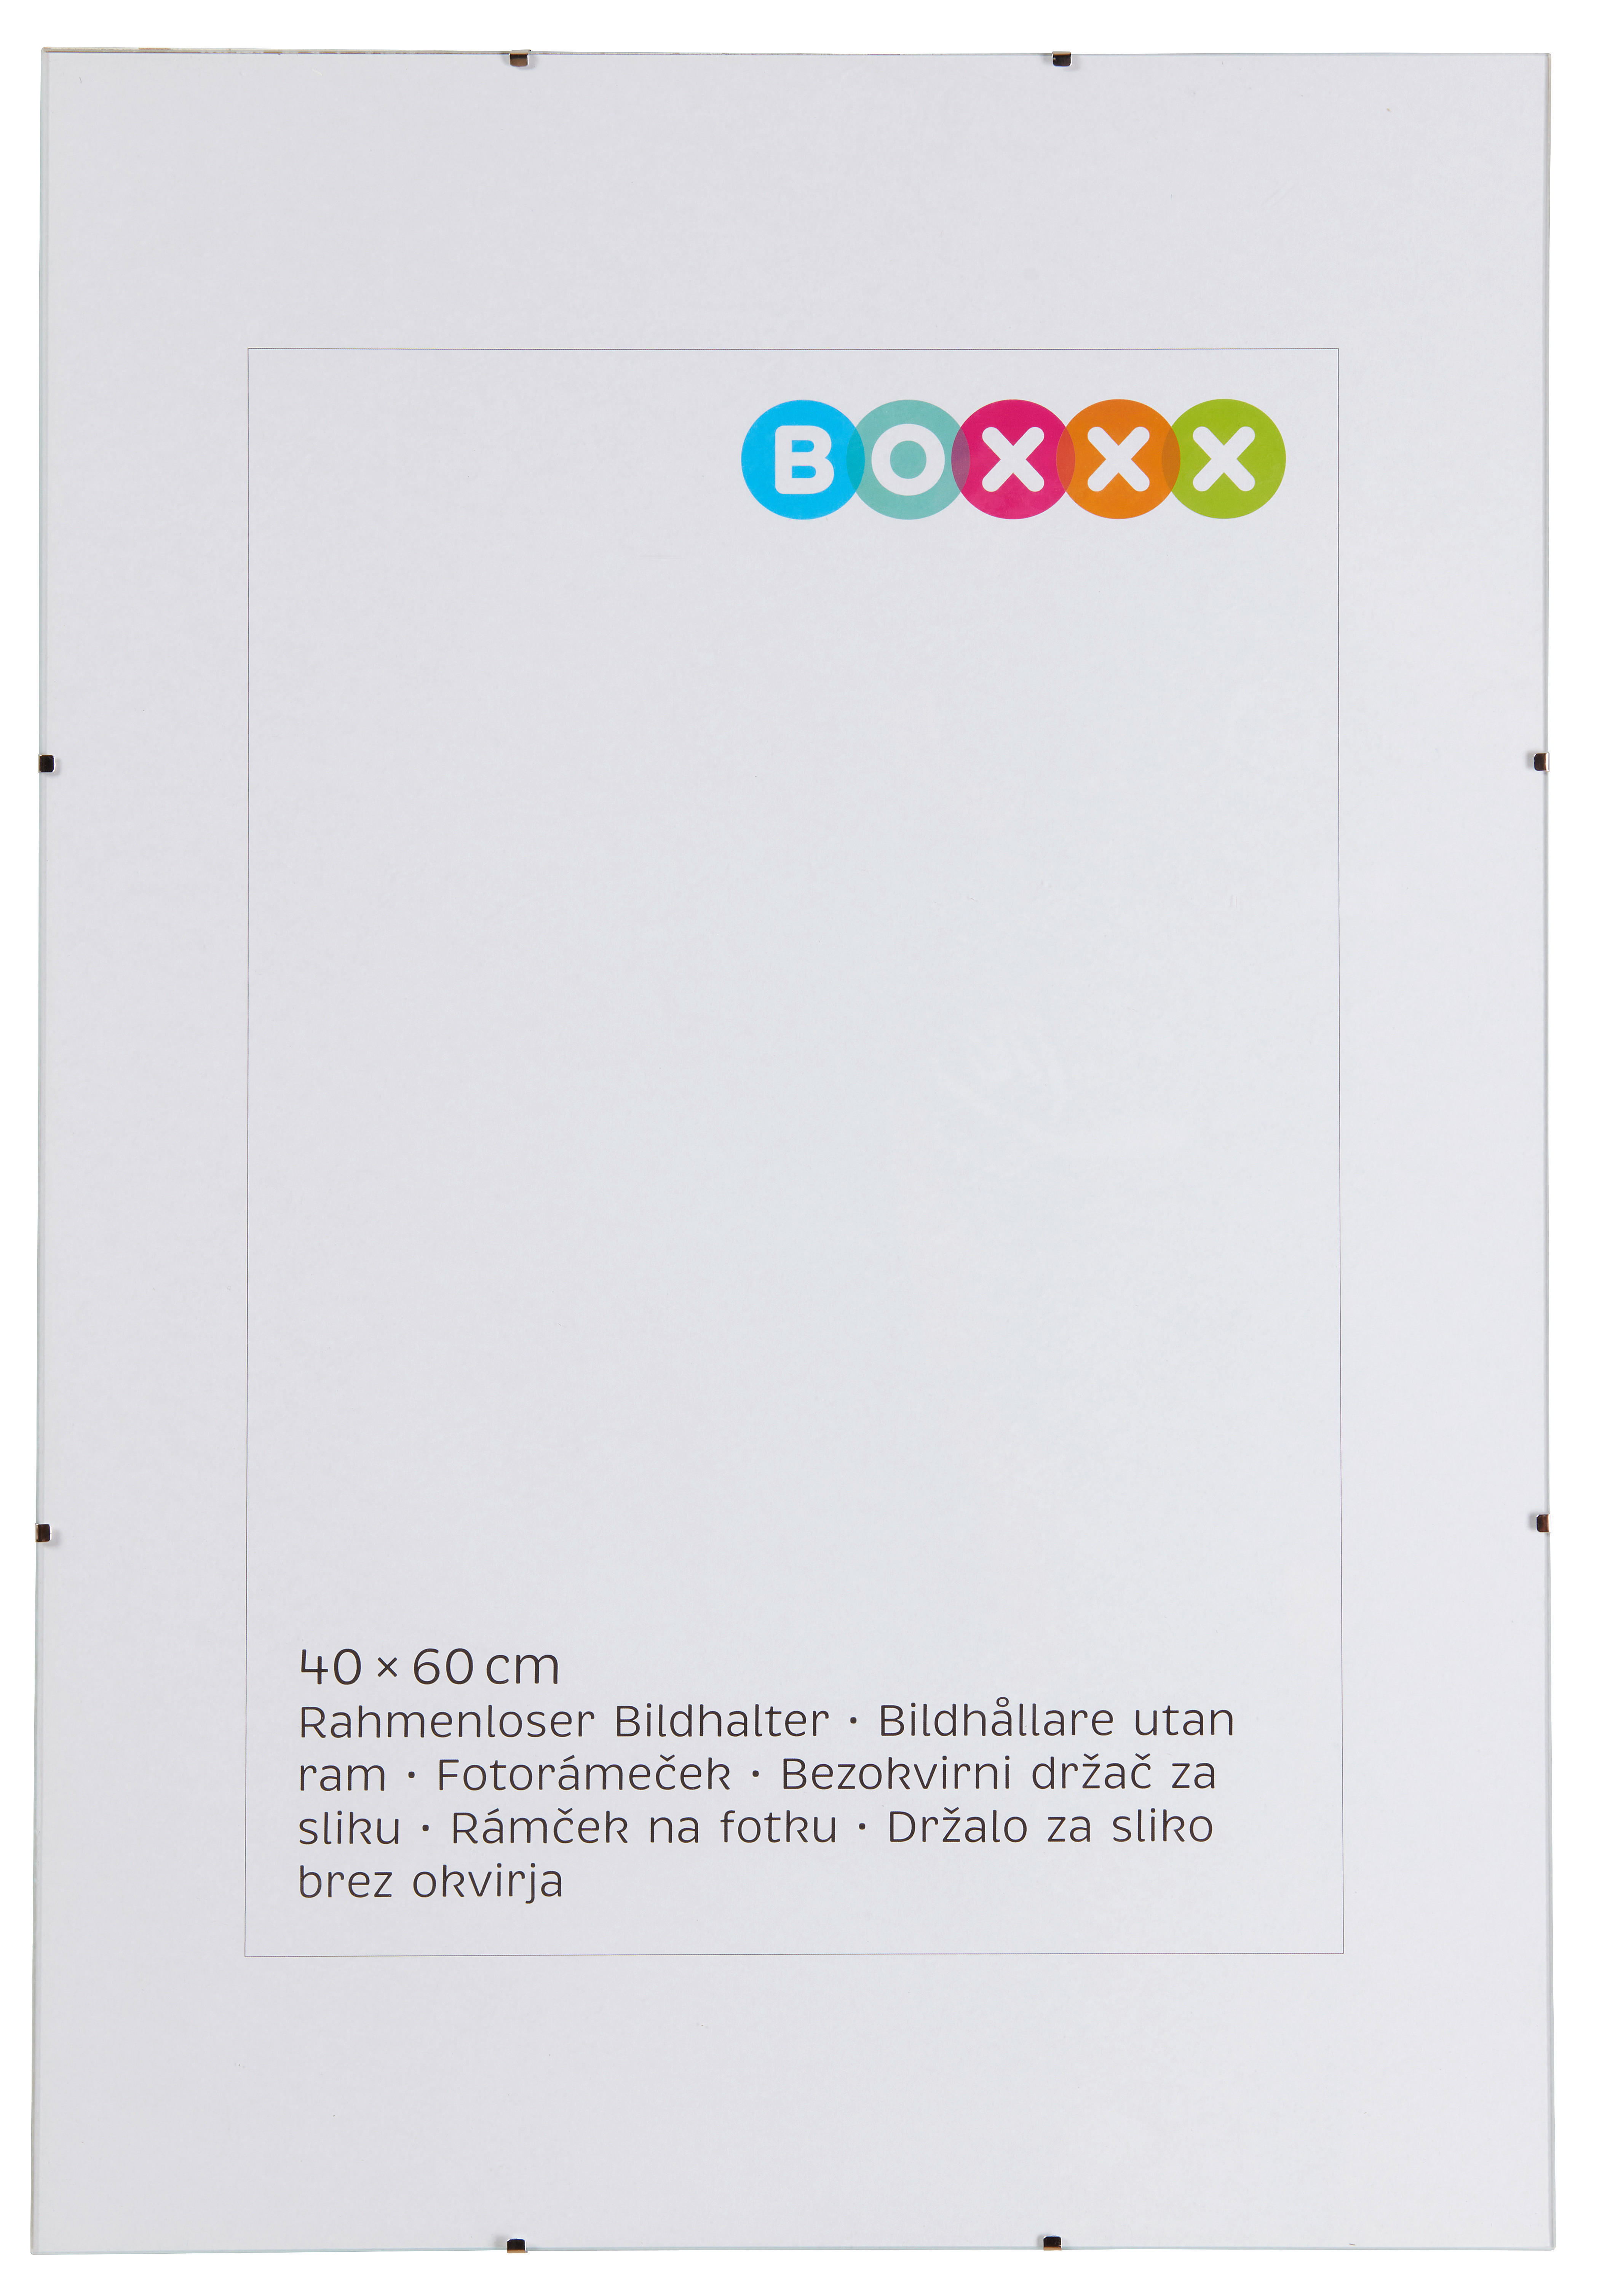 Boxxx KLIPOVÝ RÁMEČEK, 1 foto, 60/40/1 cm - čiré